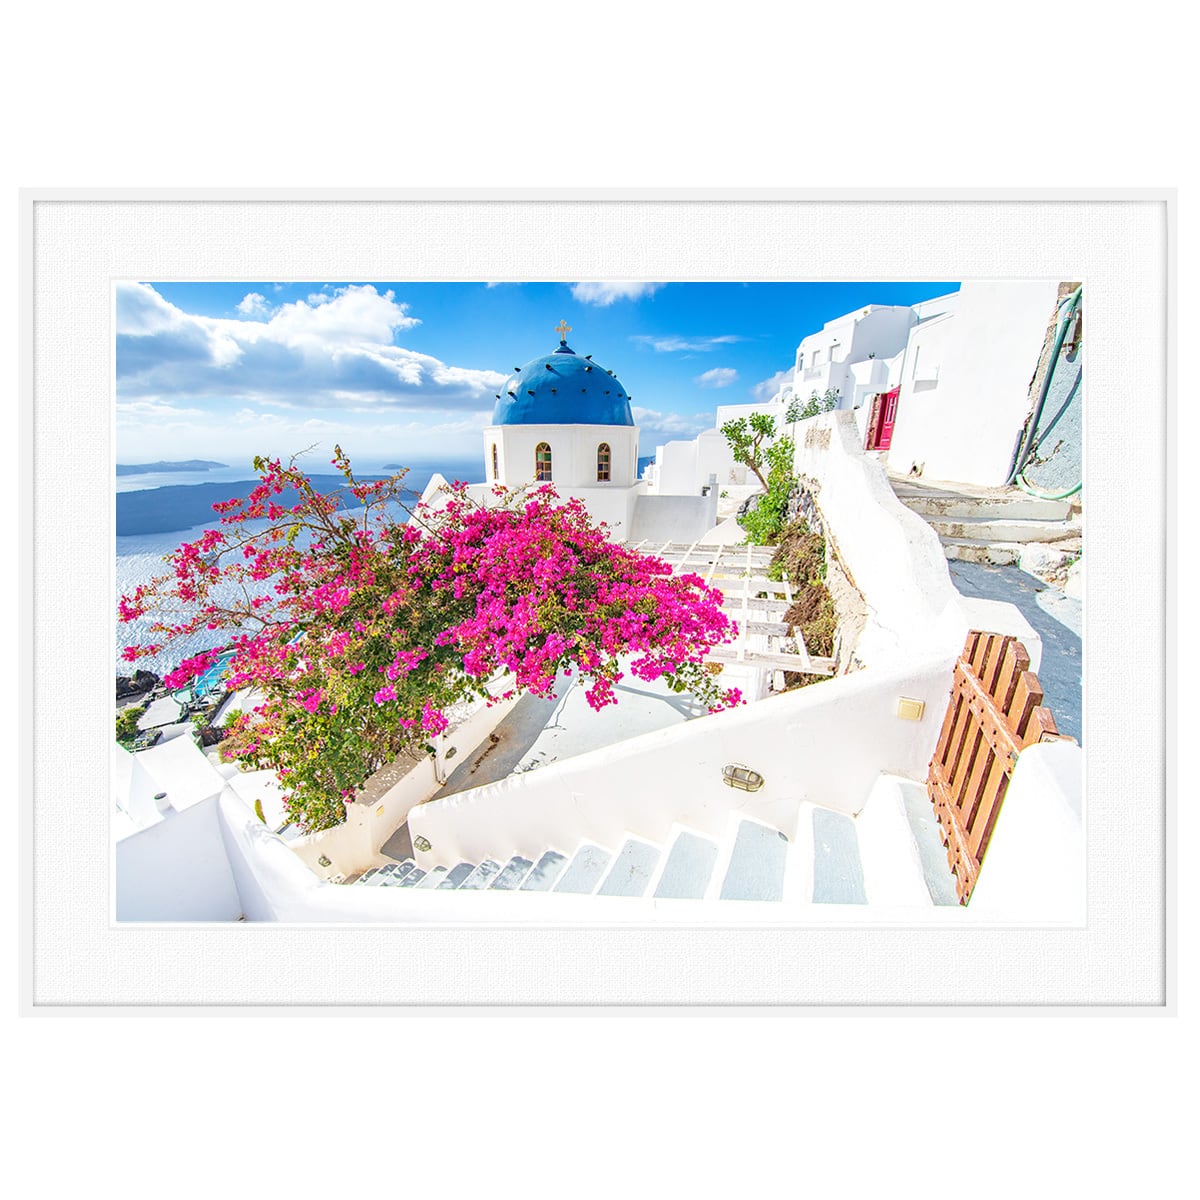 ギリシャ 風景写真 サントリーニ島 フィロステファニ村 インテリア